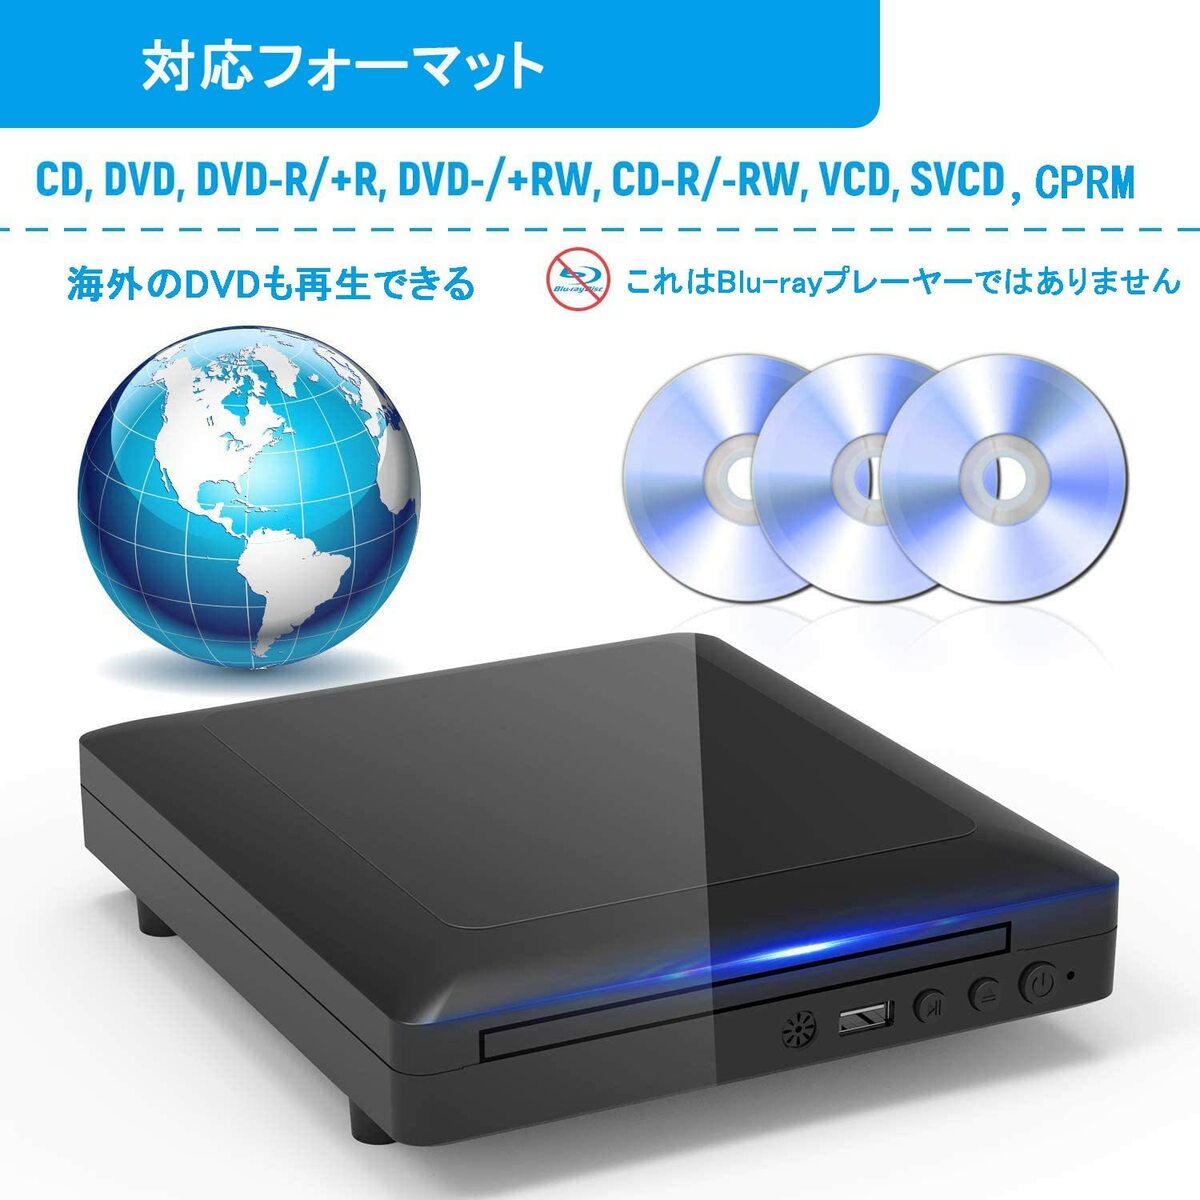 新品、本物、当店在庫だから安心】 ミニDVDプレーヤー 1080Pサポート DVD CD再生専用モデル HDMI端子搭載 CPRM対応 、録画した番組や地上デジタル放送を再生する、USB、AV HDMIケーブルが付属し、テレビに接続できます、リモコン、日本語説明書付き  MIC-DP8043 ブルーレイ ...